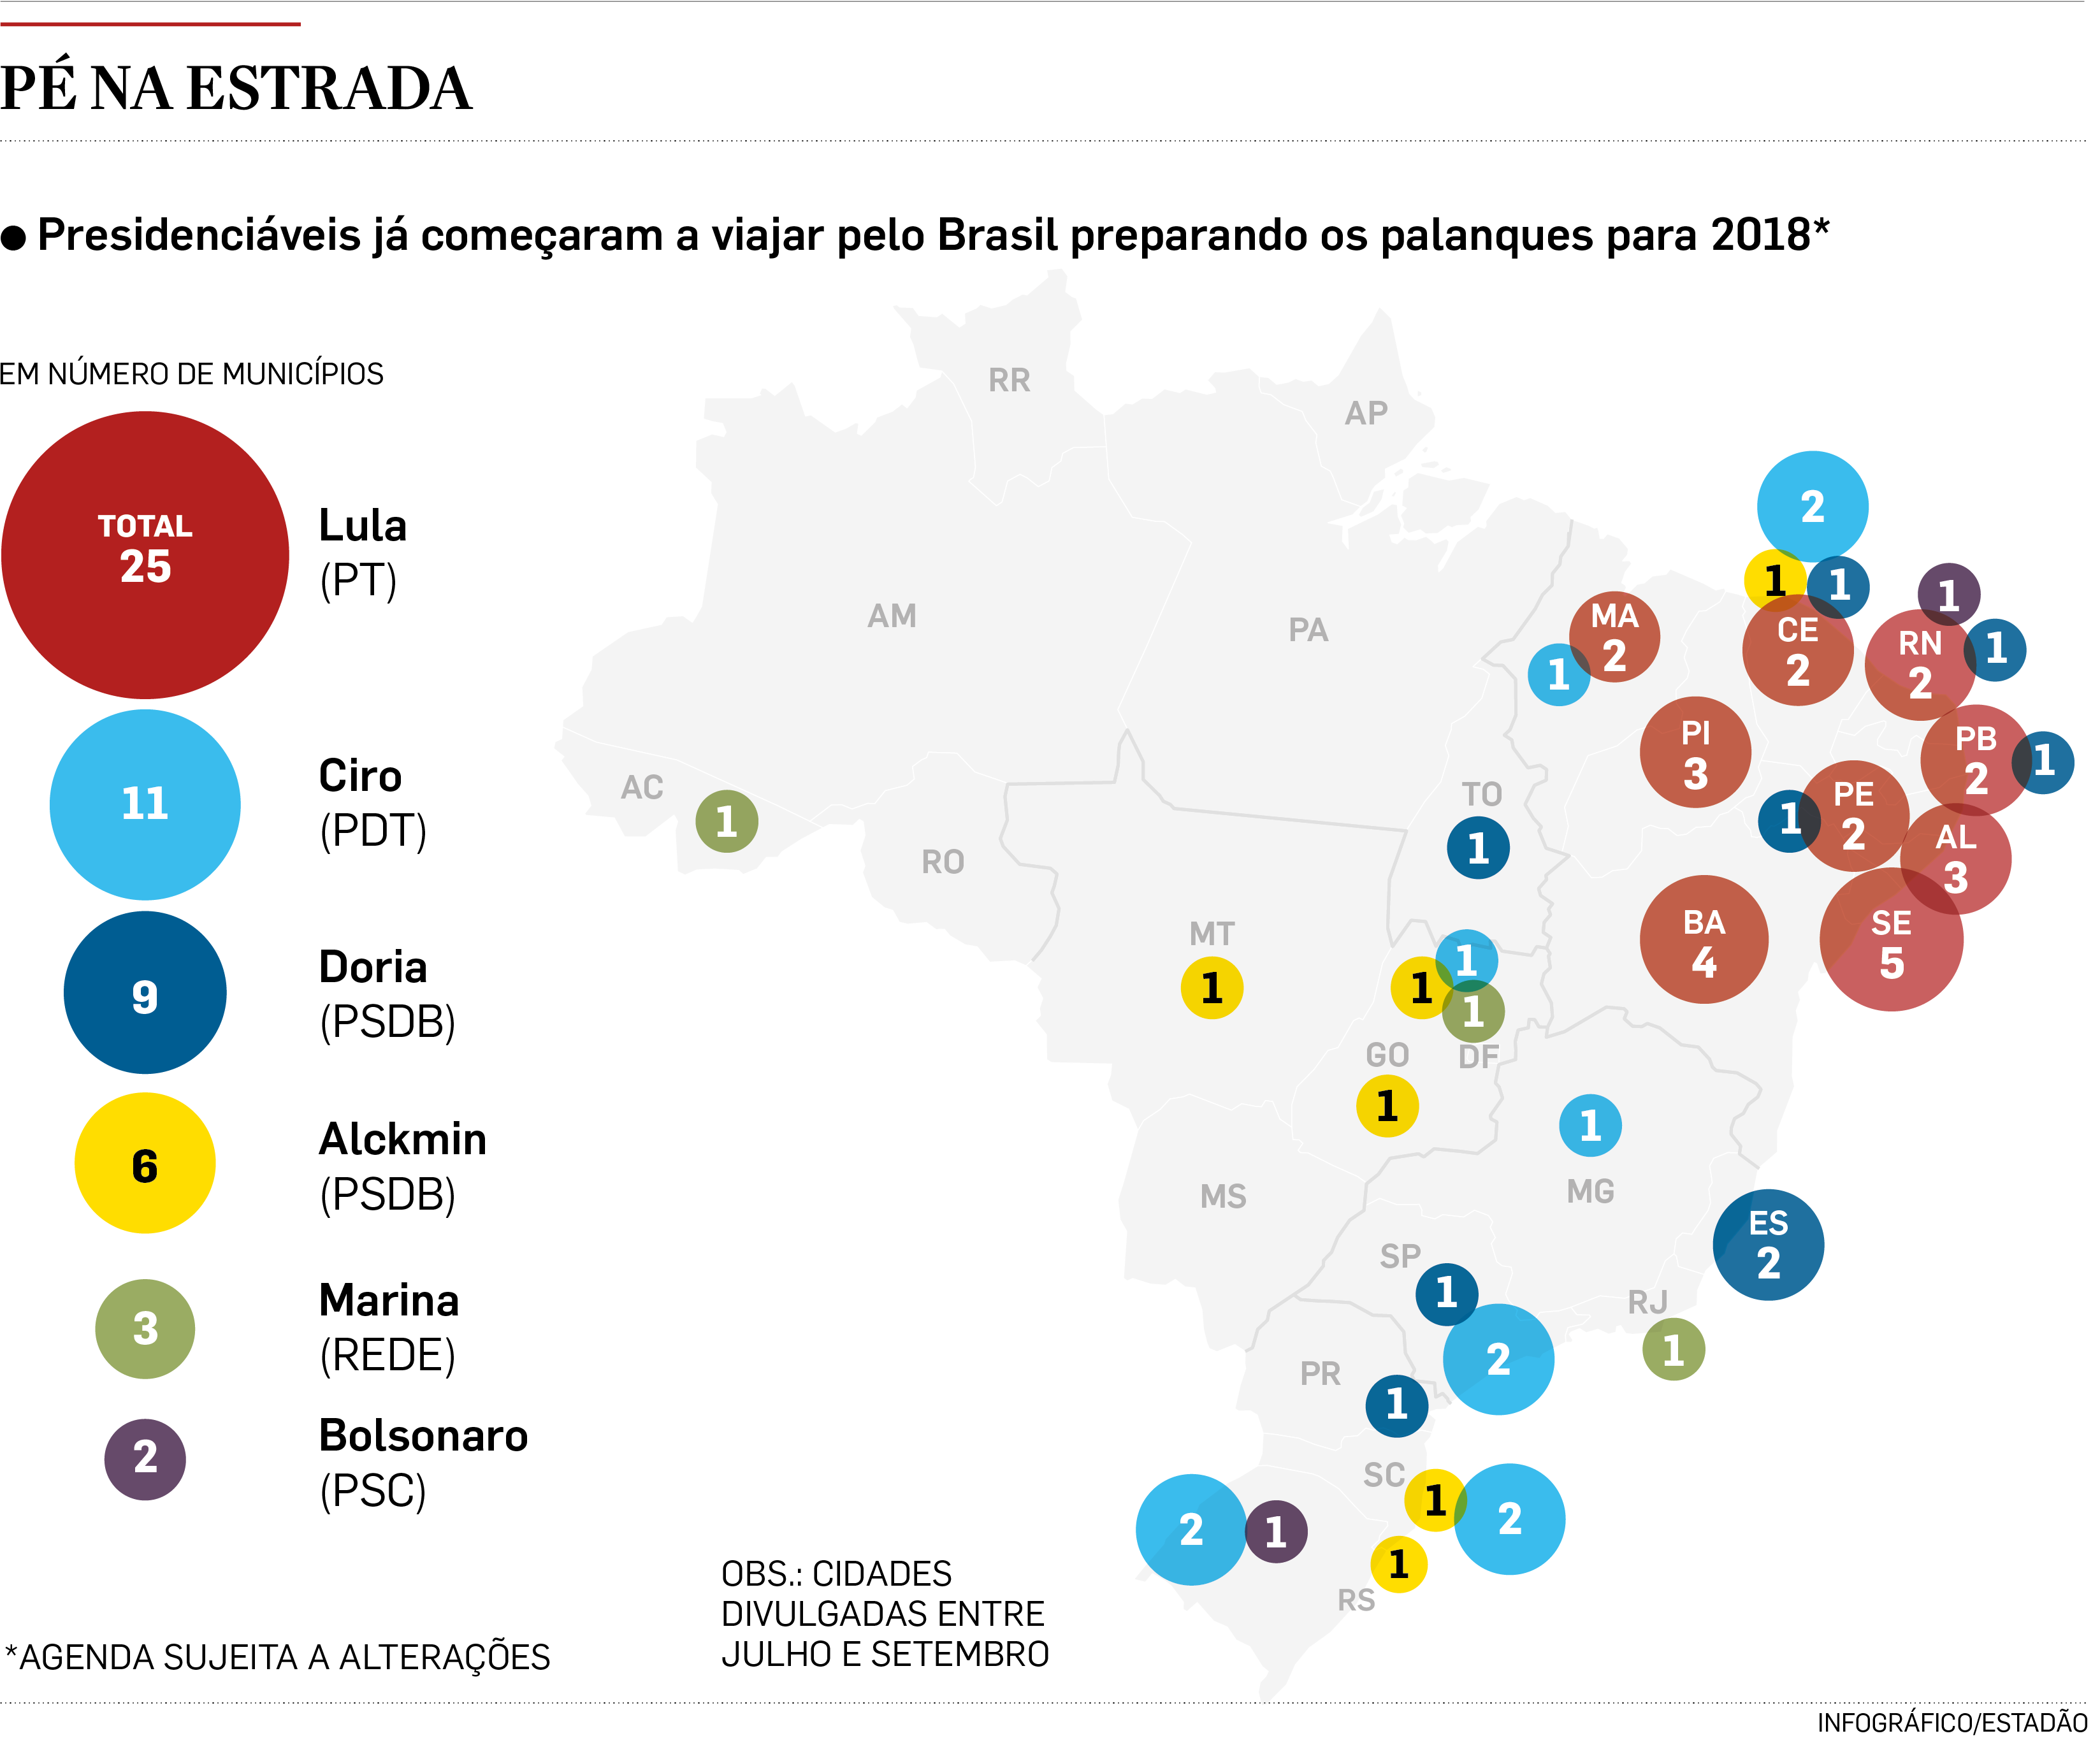 Resultado de imagem para Lula, Ciro e Doria lideram ranking de caravanas